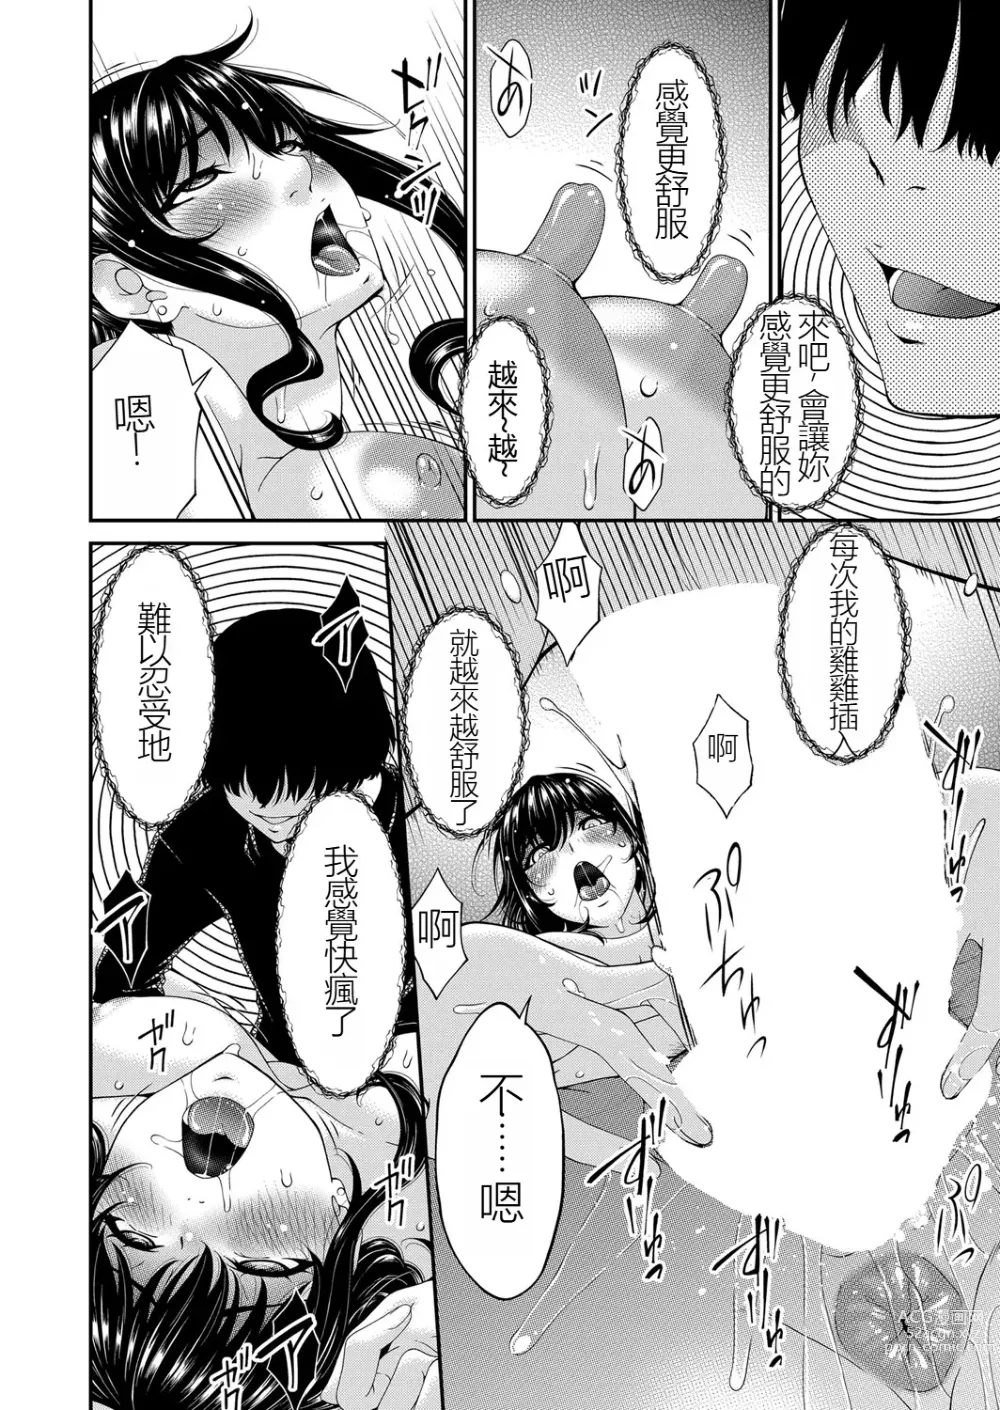 Page 18 of manga Saiin Kazoku Completed